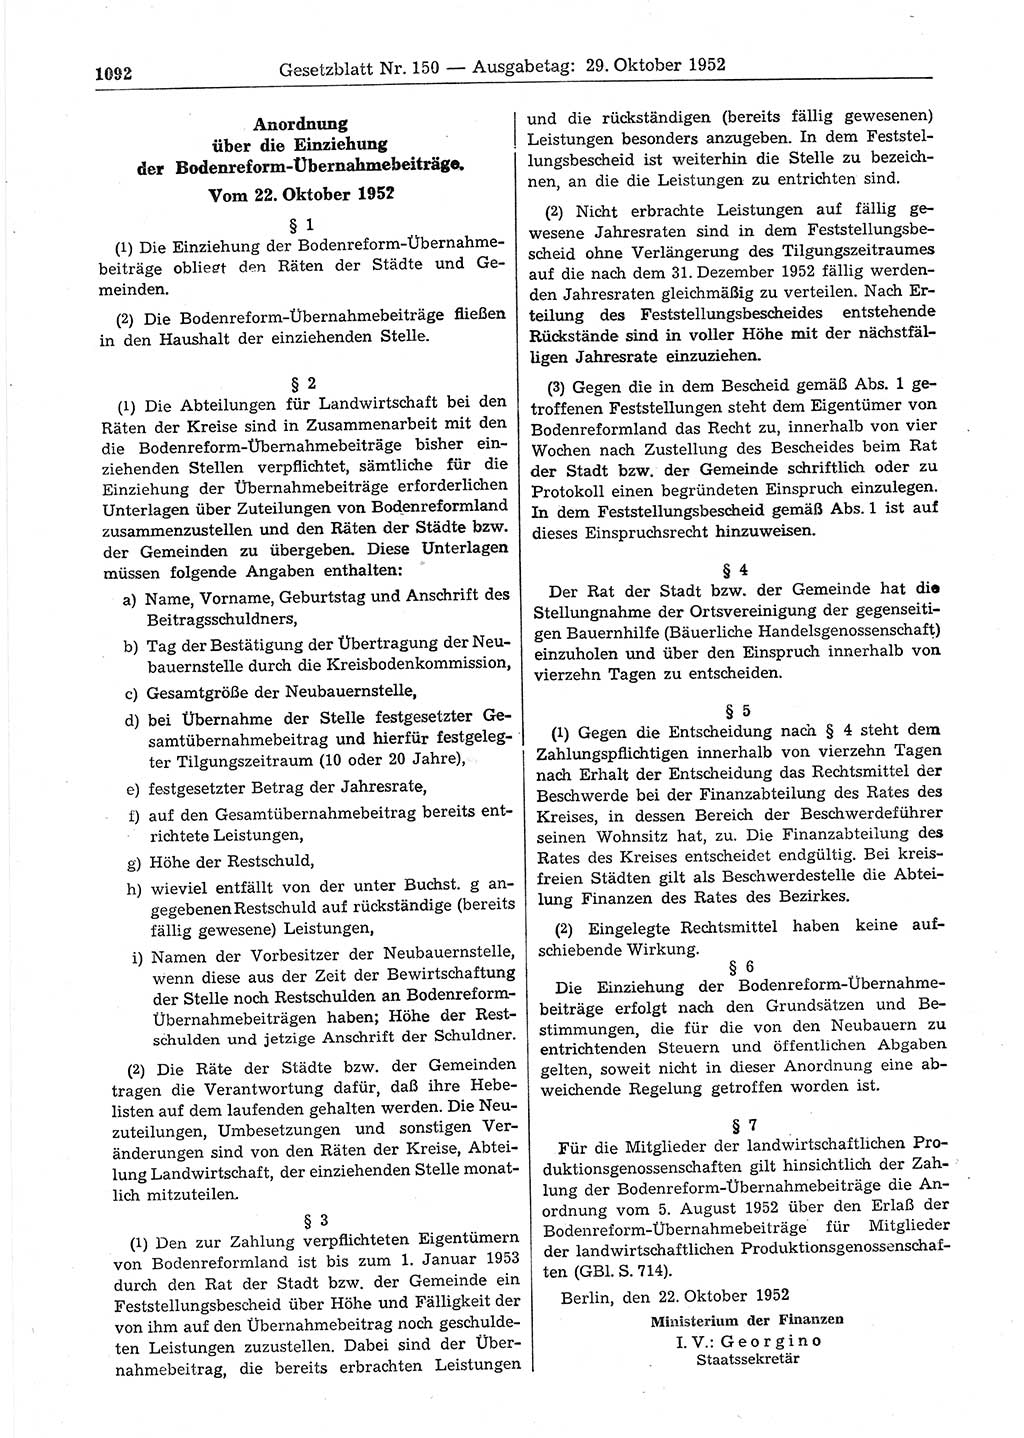 Gesetzblatt (GBl.) der Deutschen Demokratischen Republik (DDR) 1952, Seite 1092 (GBl. DDR 1952, S. 1092)